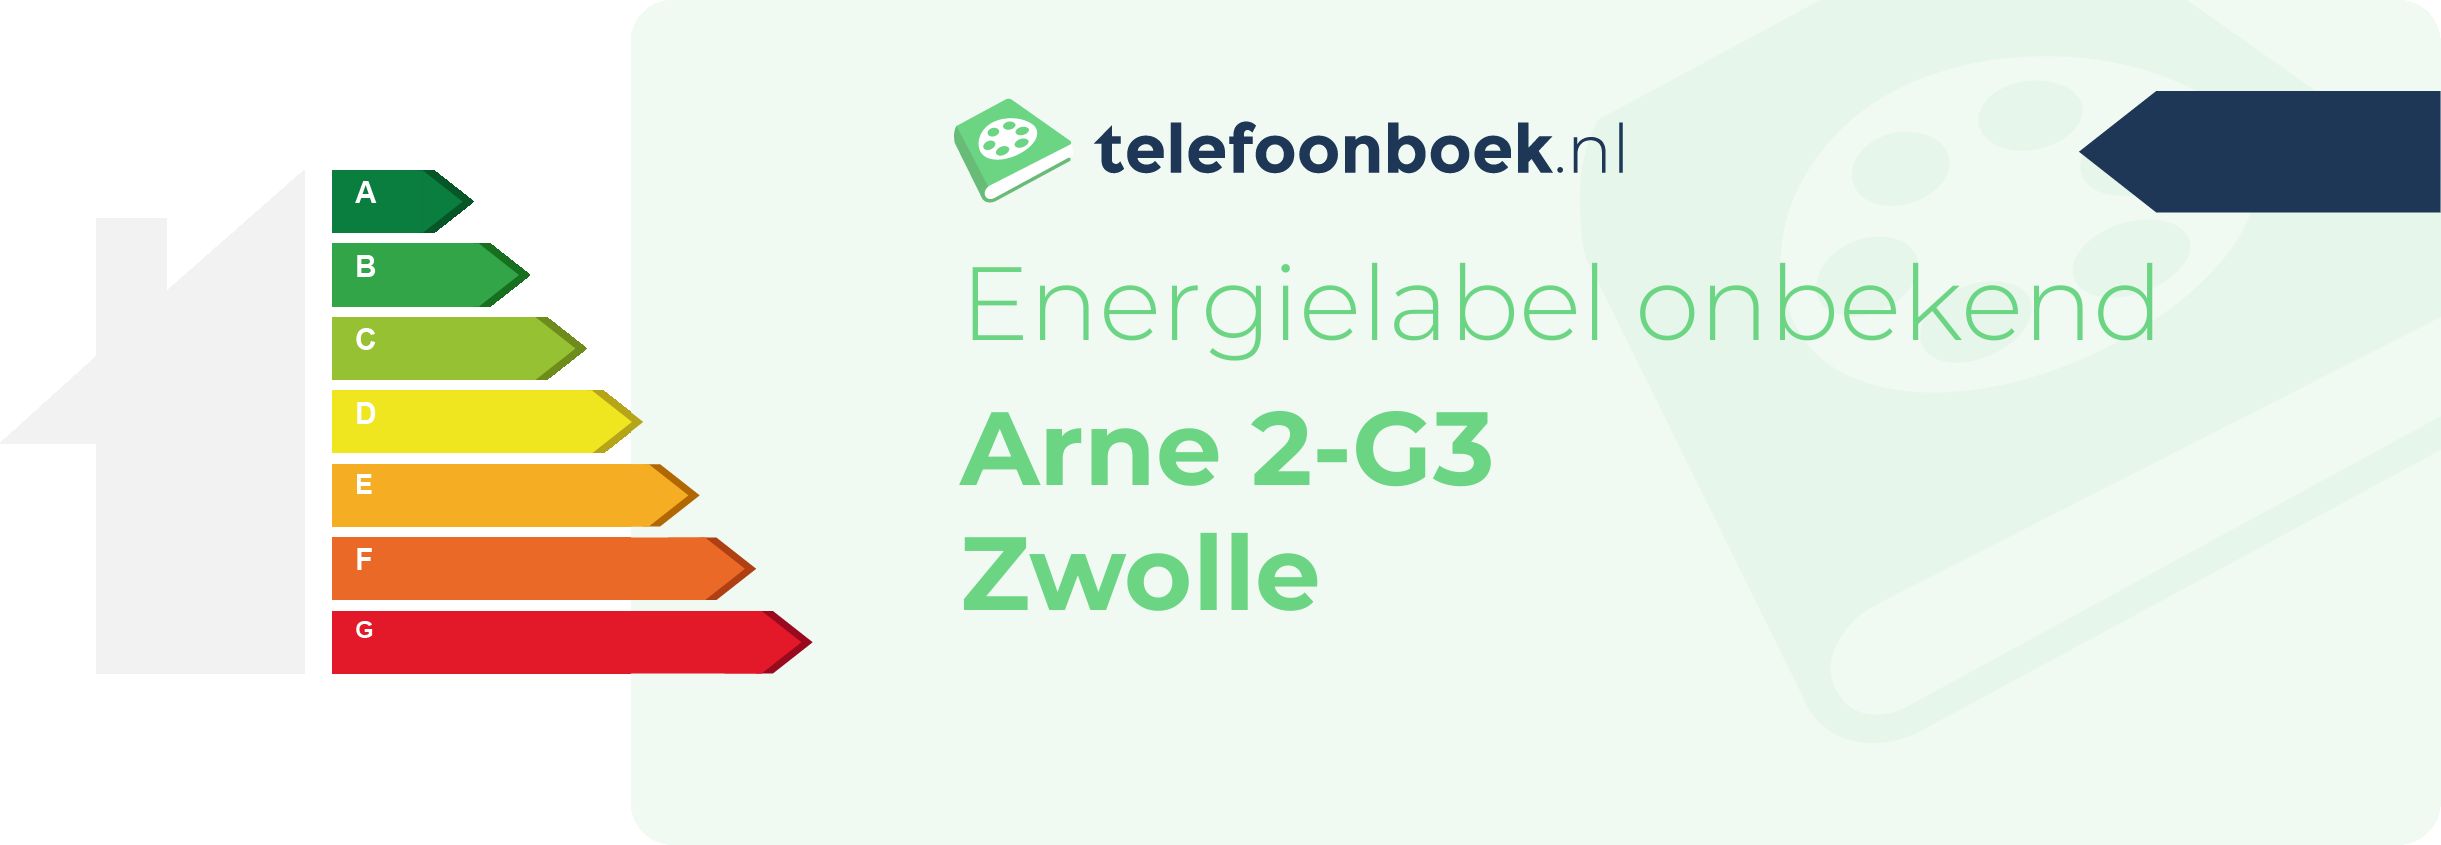 Energielabel Arne 2-G3 Zwolle